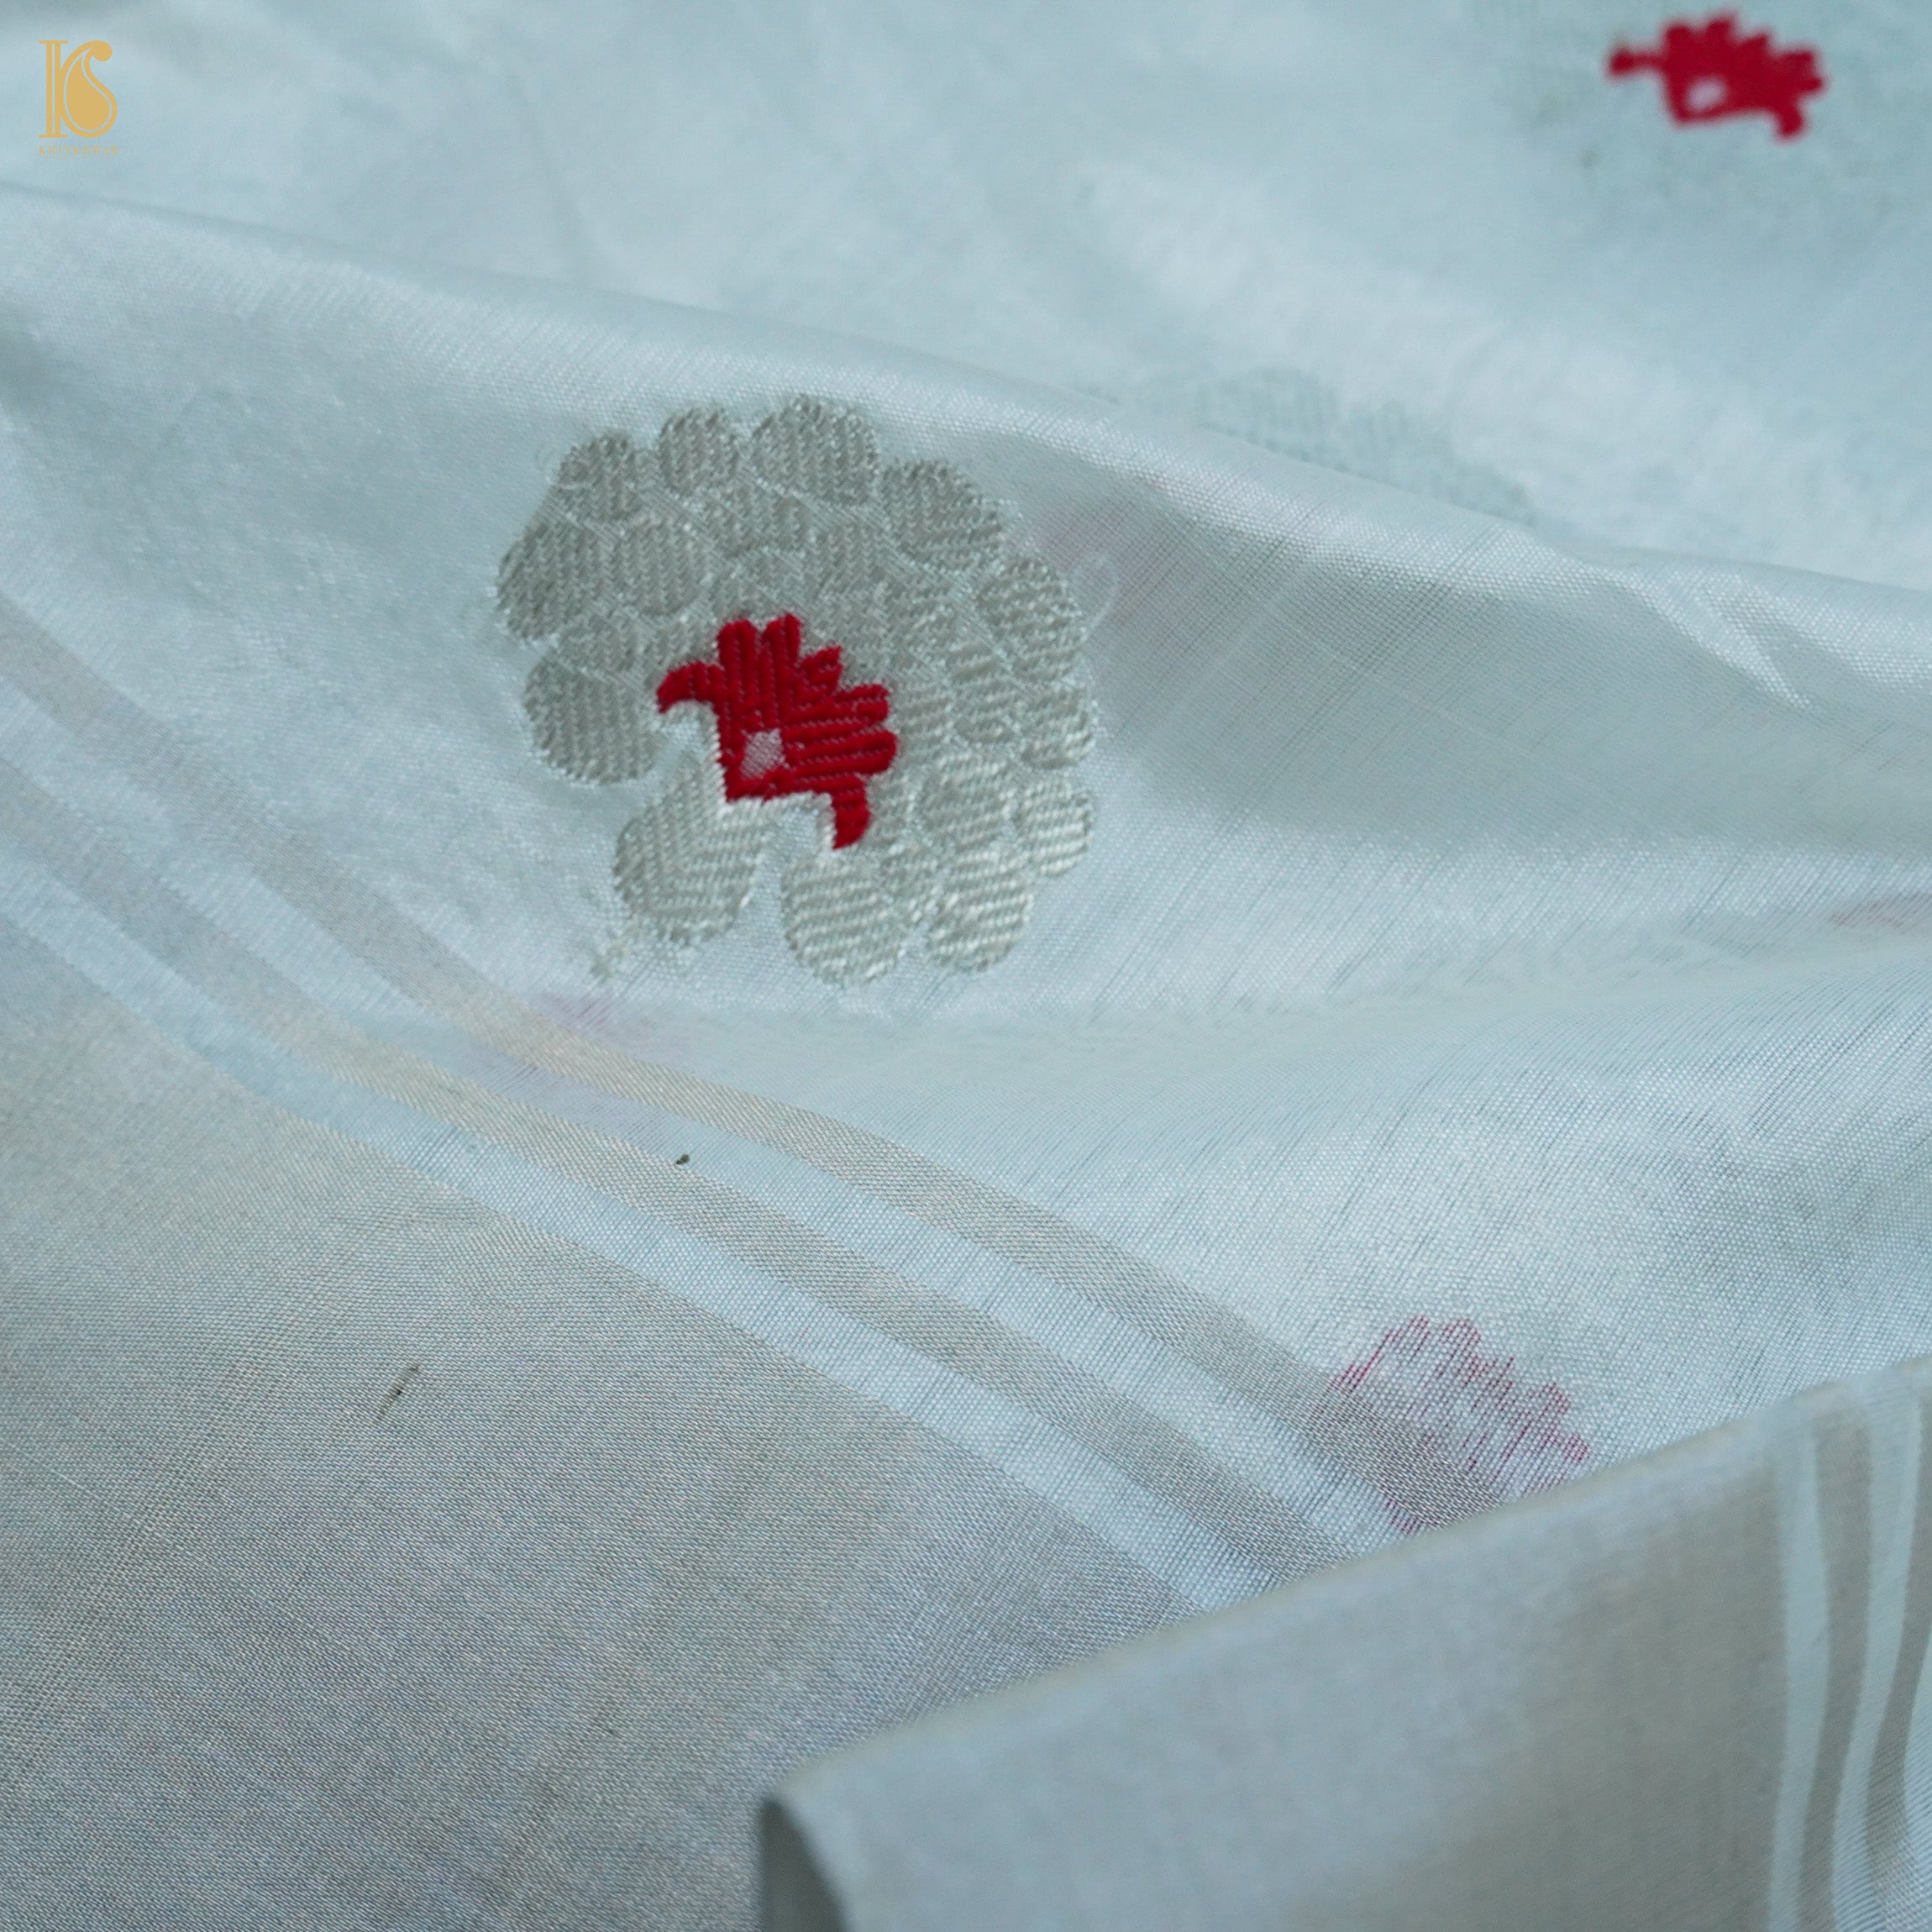 White Handwoven Pure Chanderi Meenakari Saree - Khinkhwab